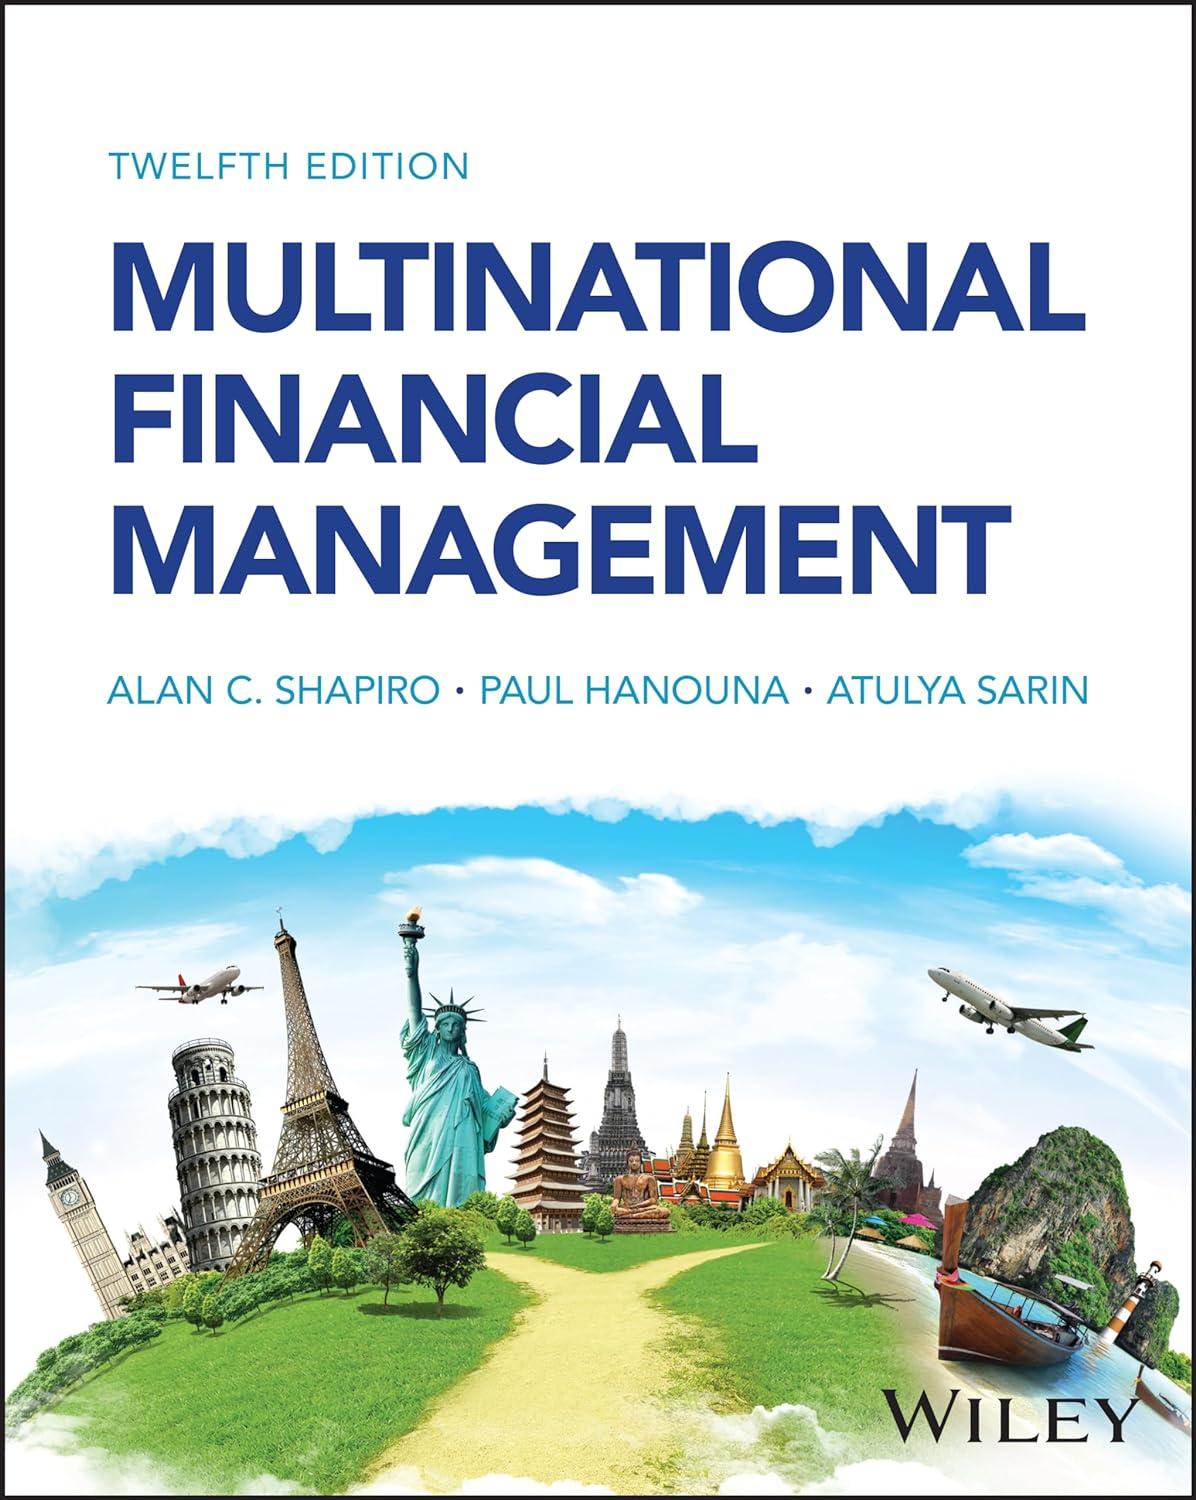 multinational financial management 12th edition alan c. shapiro, paul hanouna, atulya sarin 1394187831,